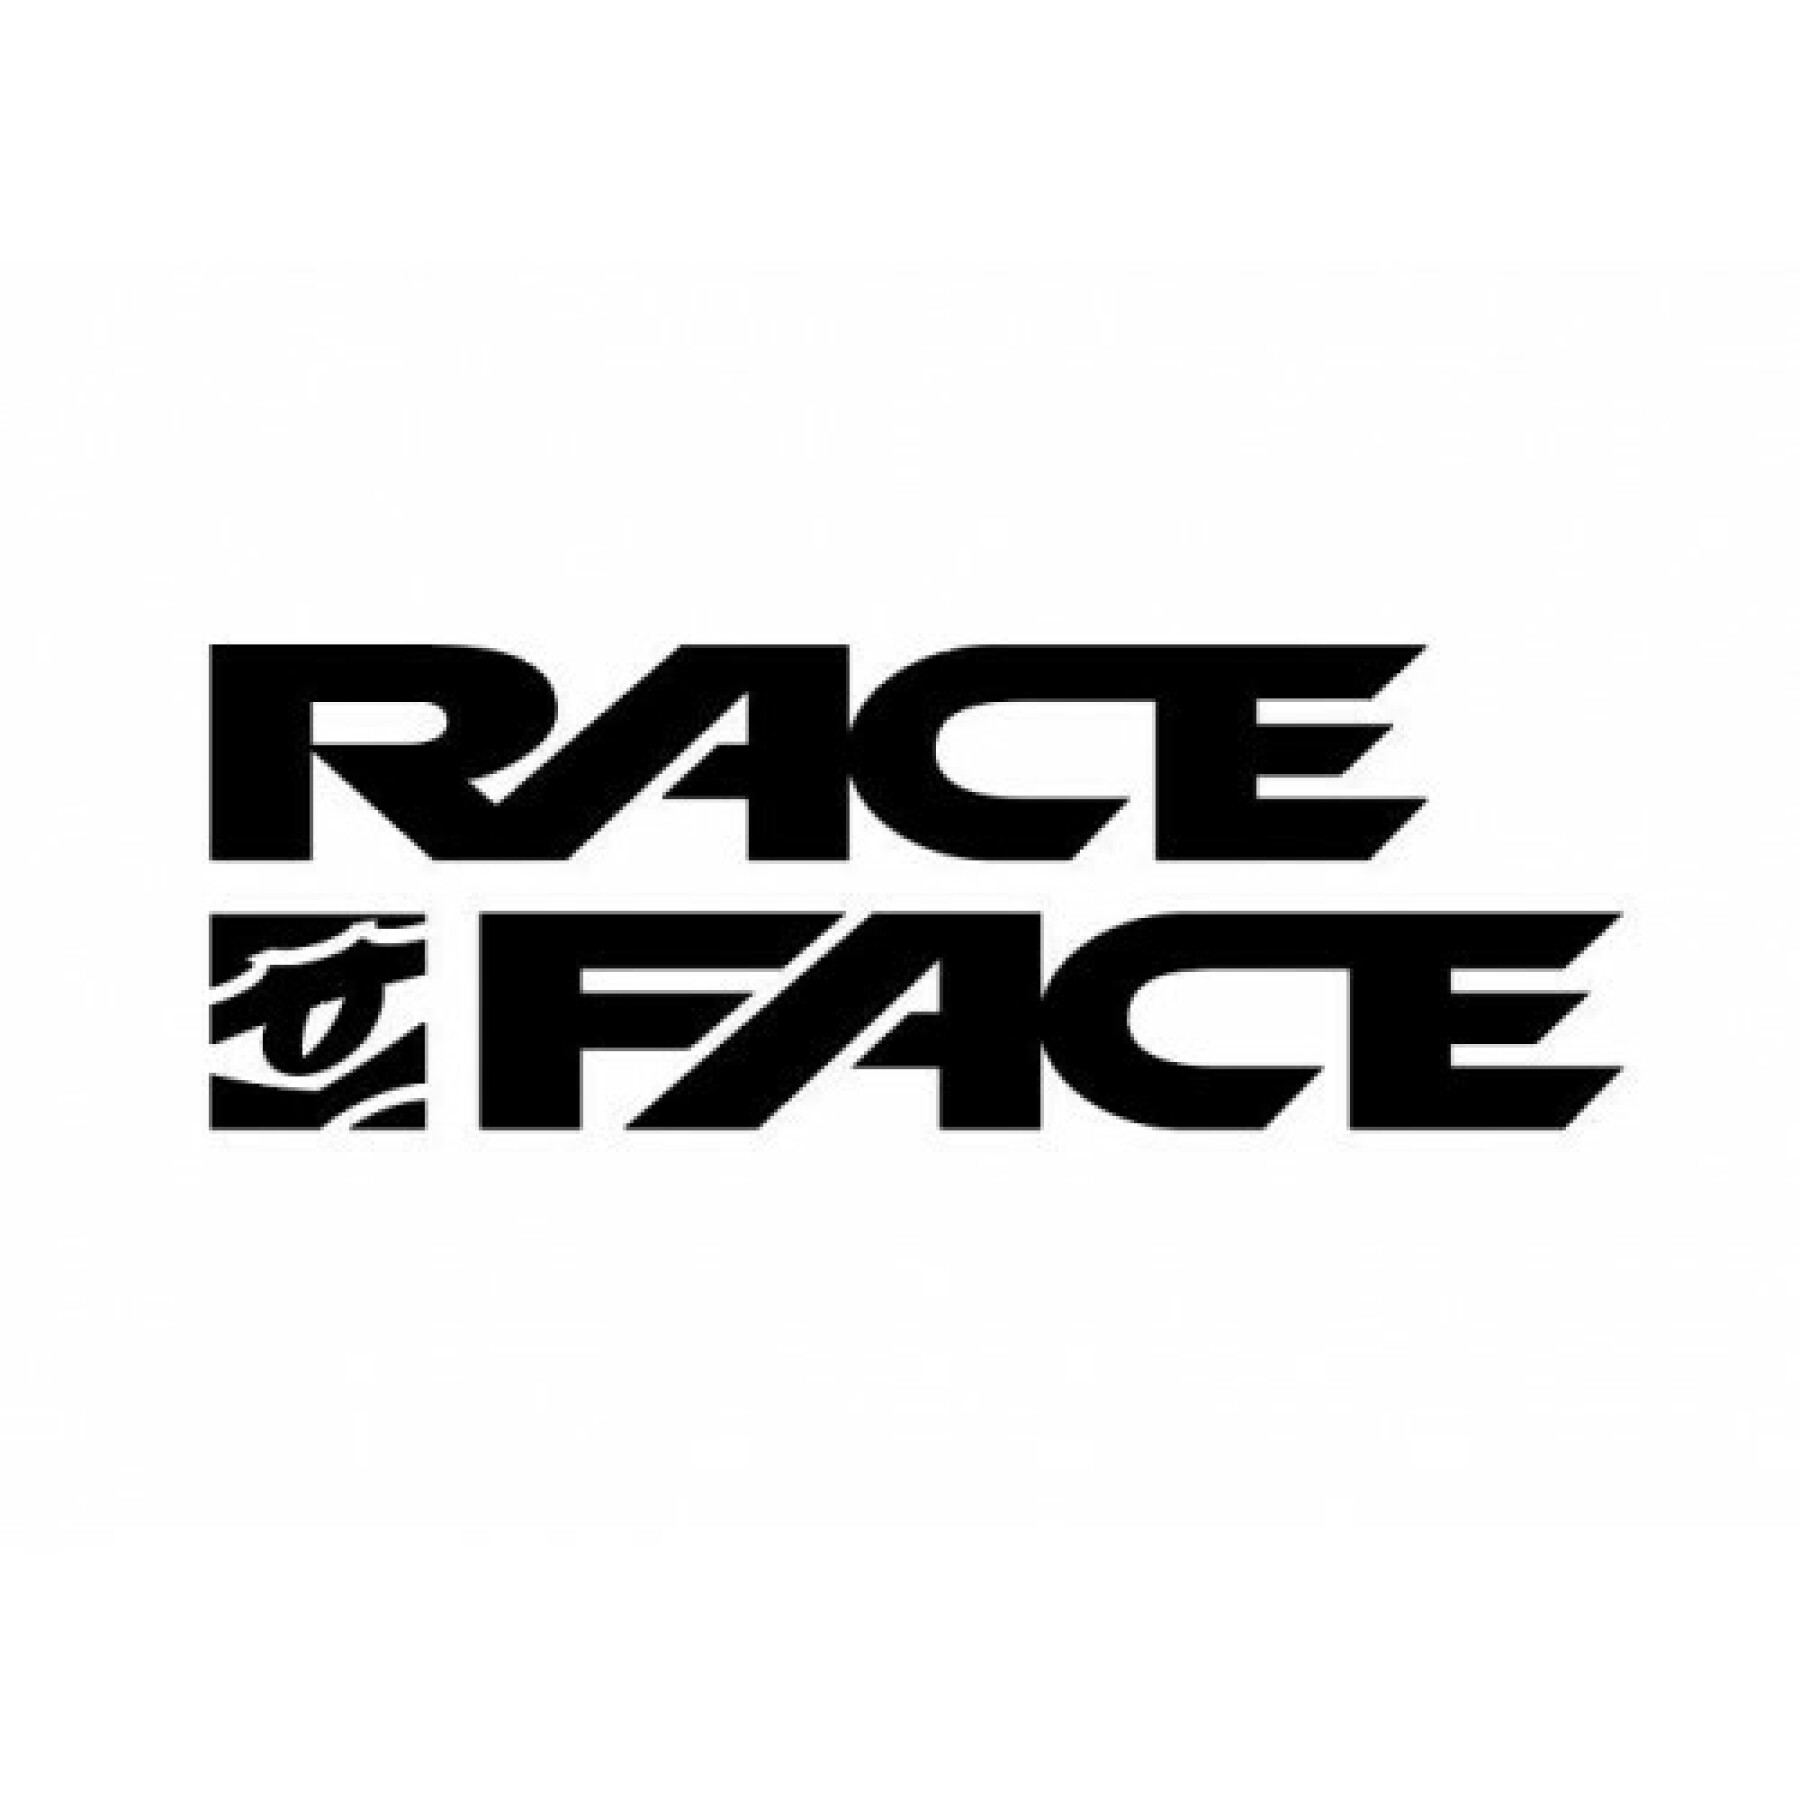 Cerchio Race Face arc offset - 35 - 27.5 - 32t